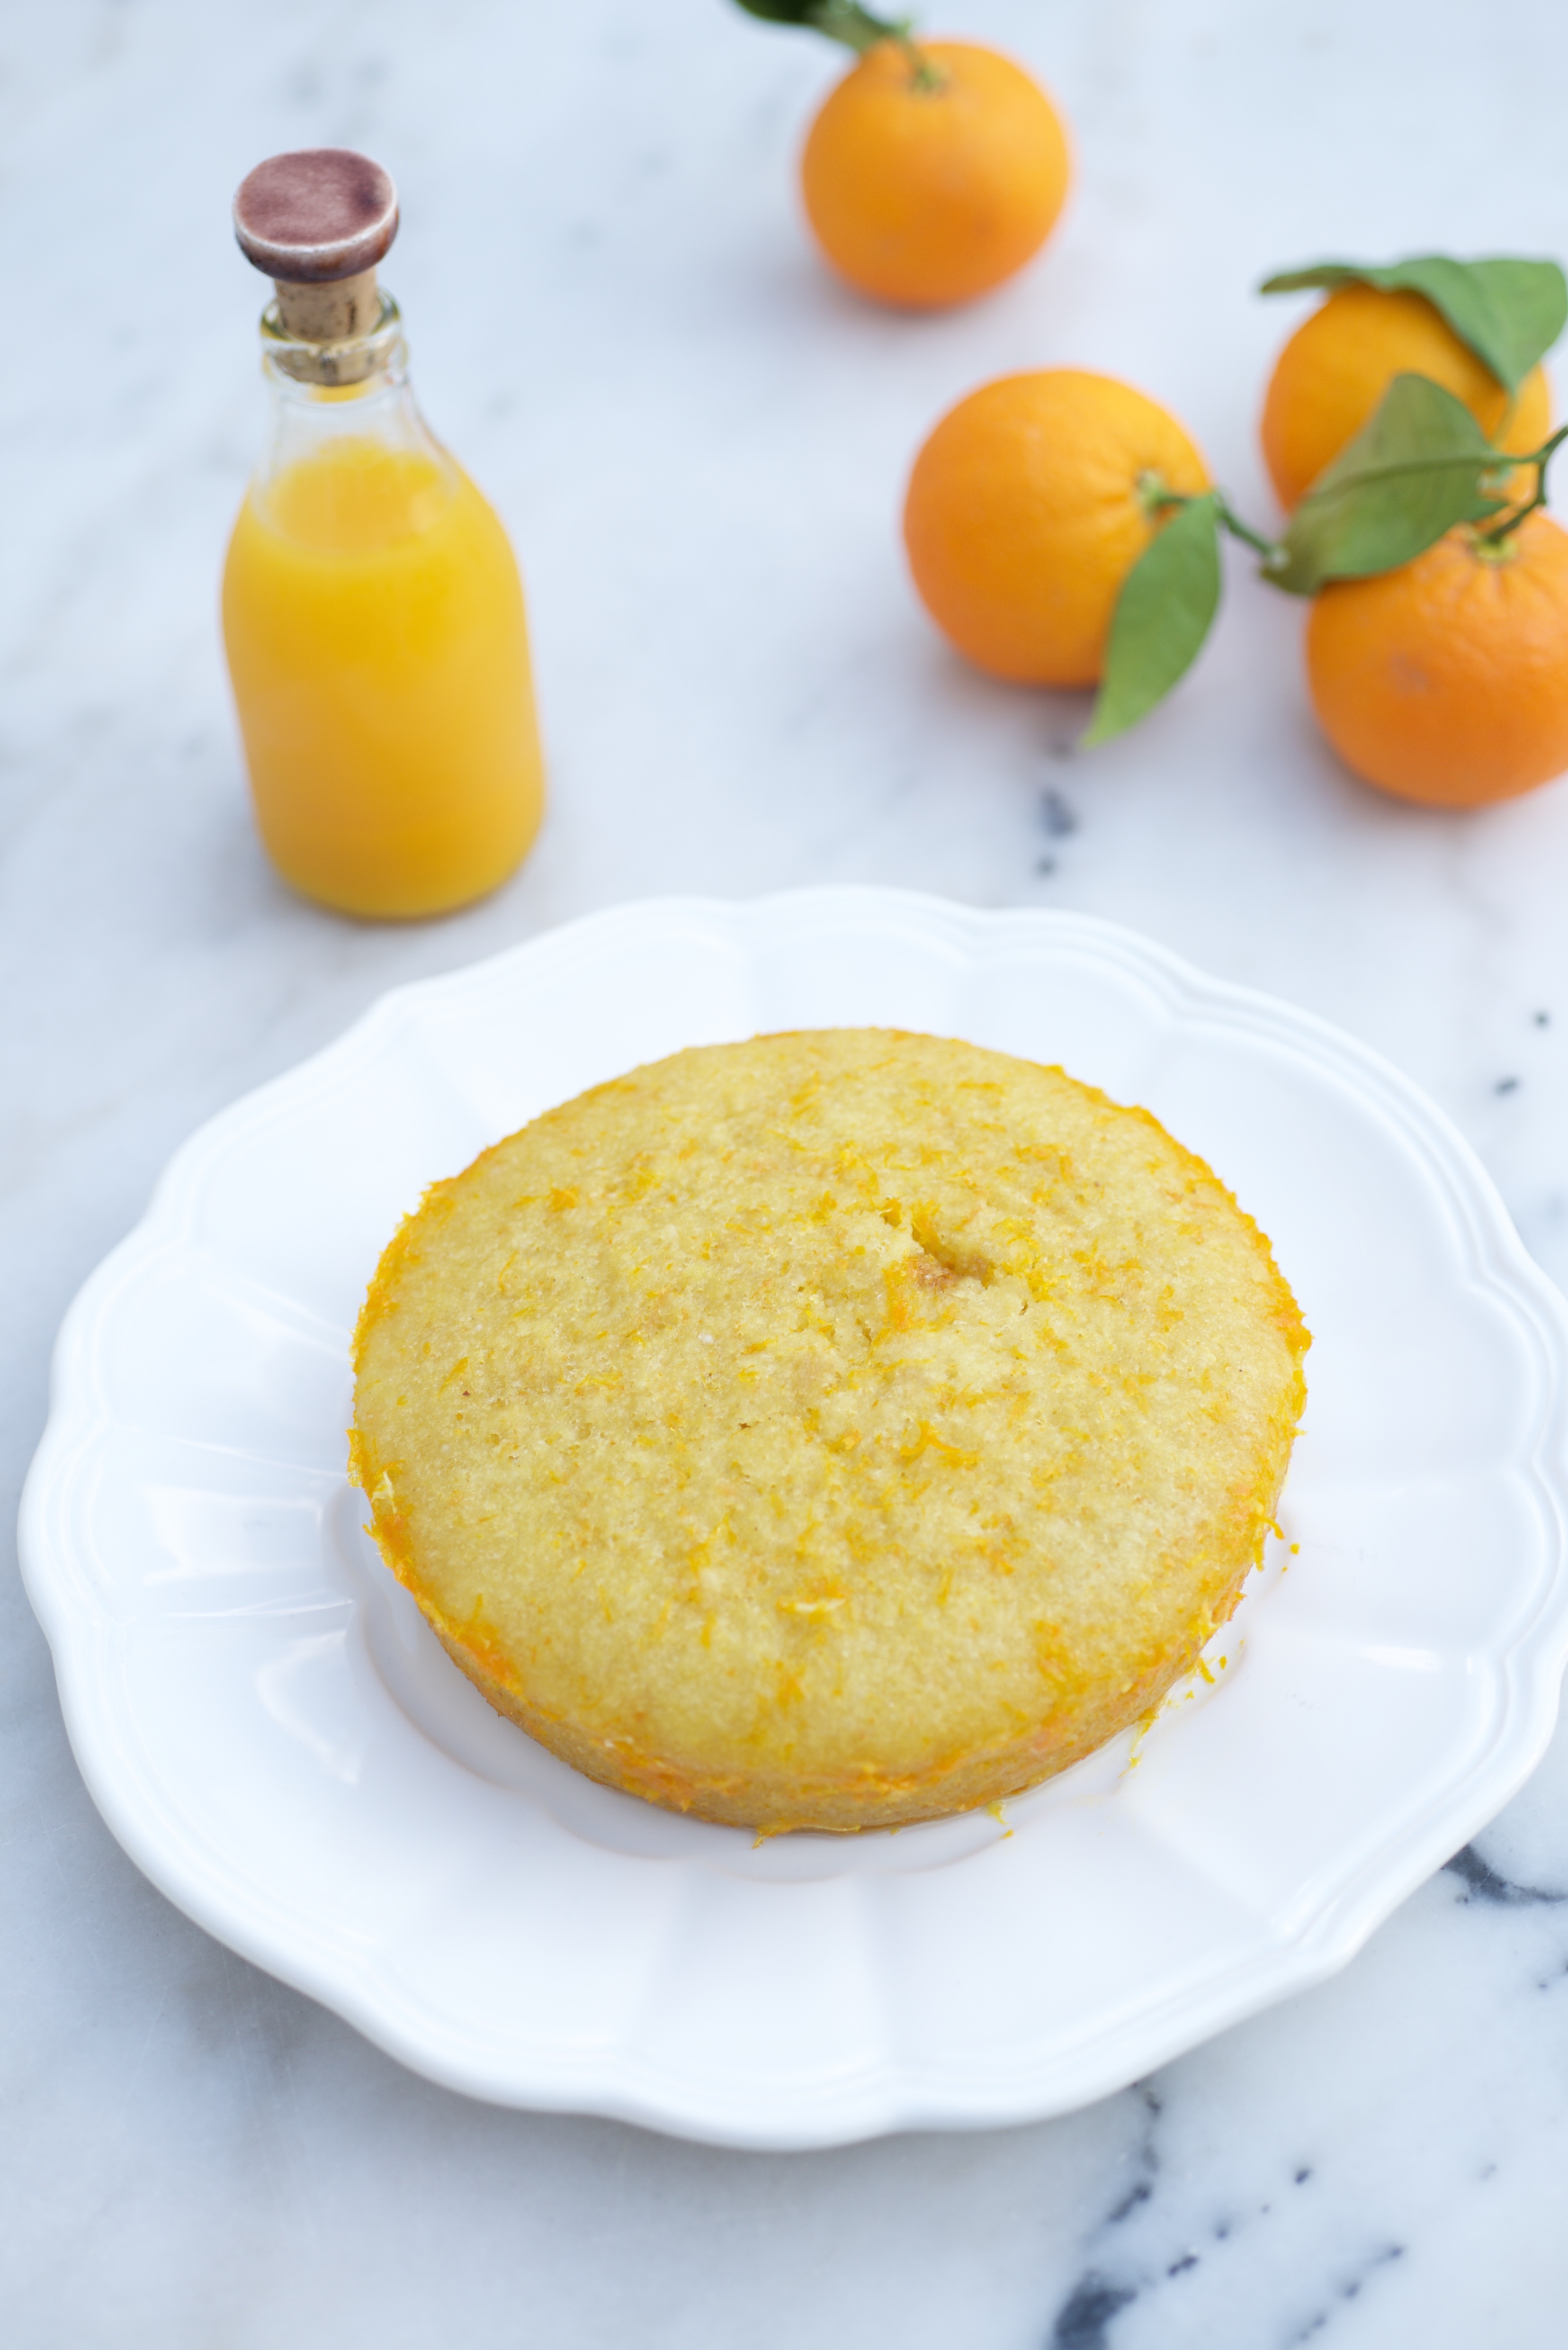 photographie culinaire d'un gâteau à l'orange